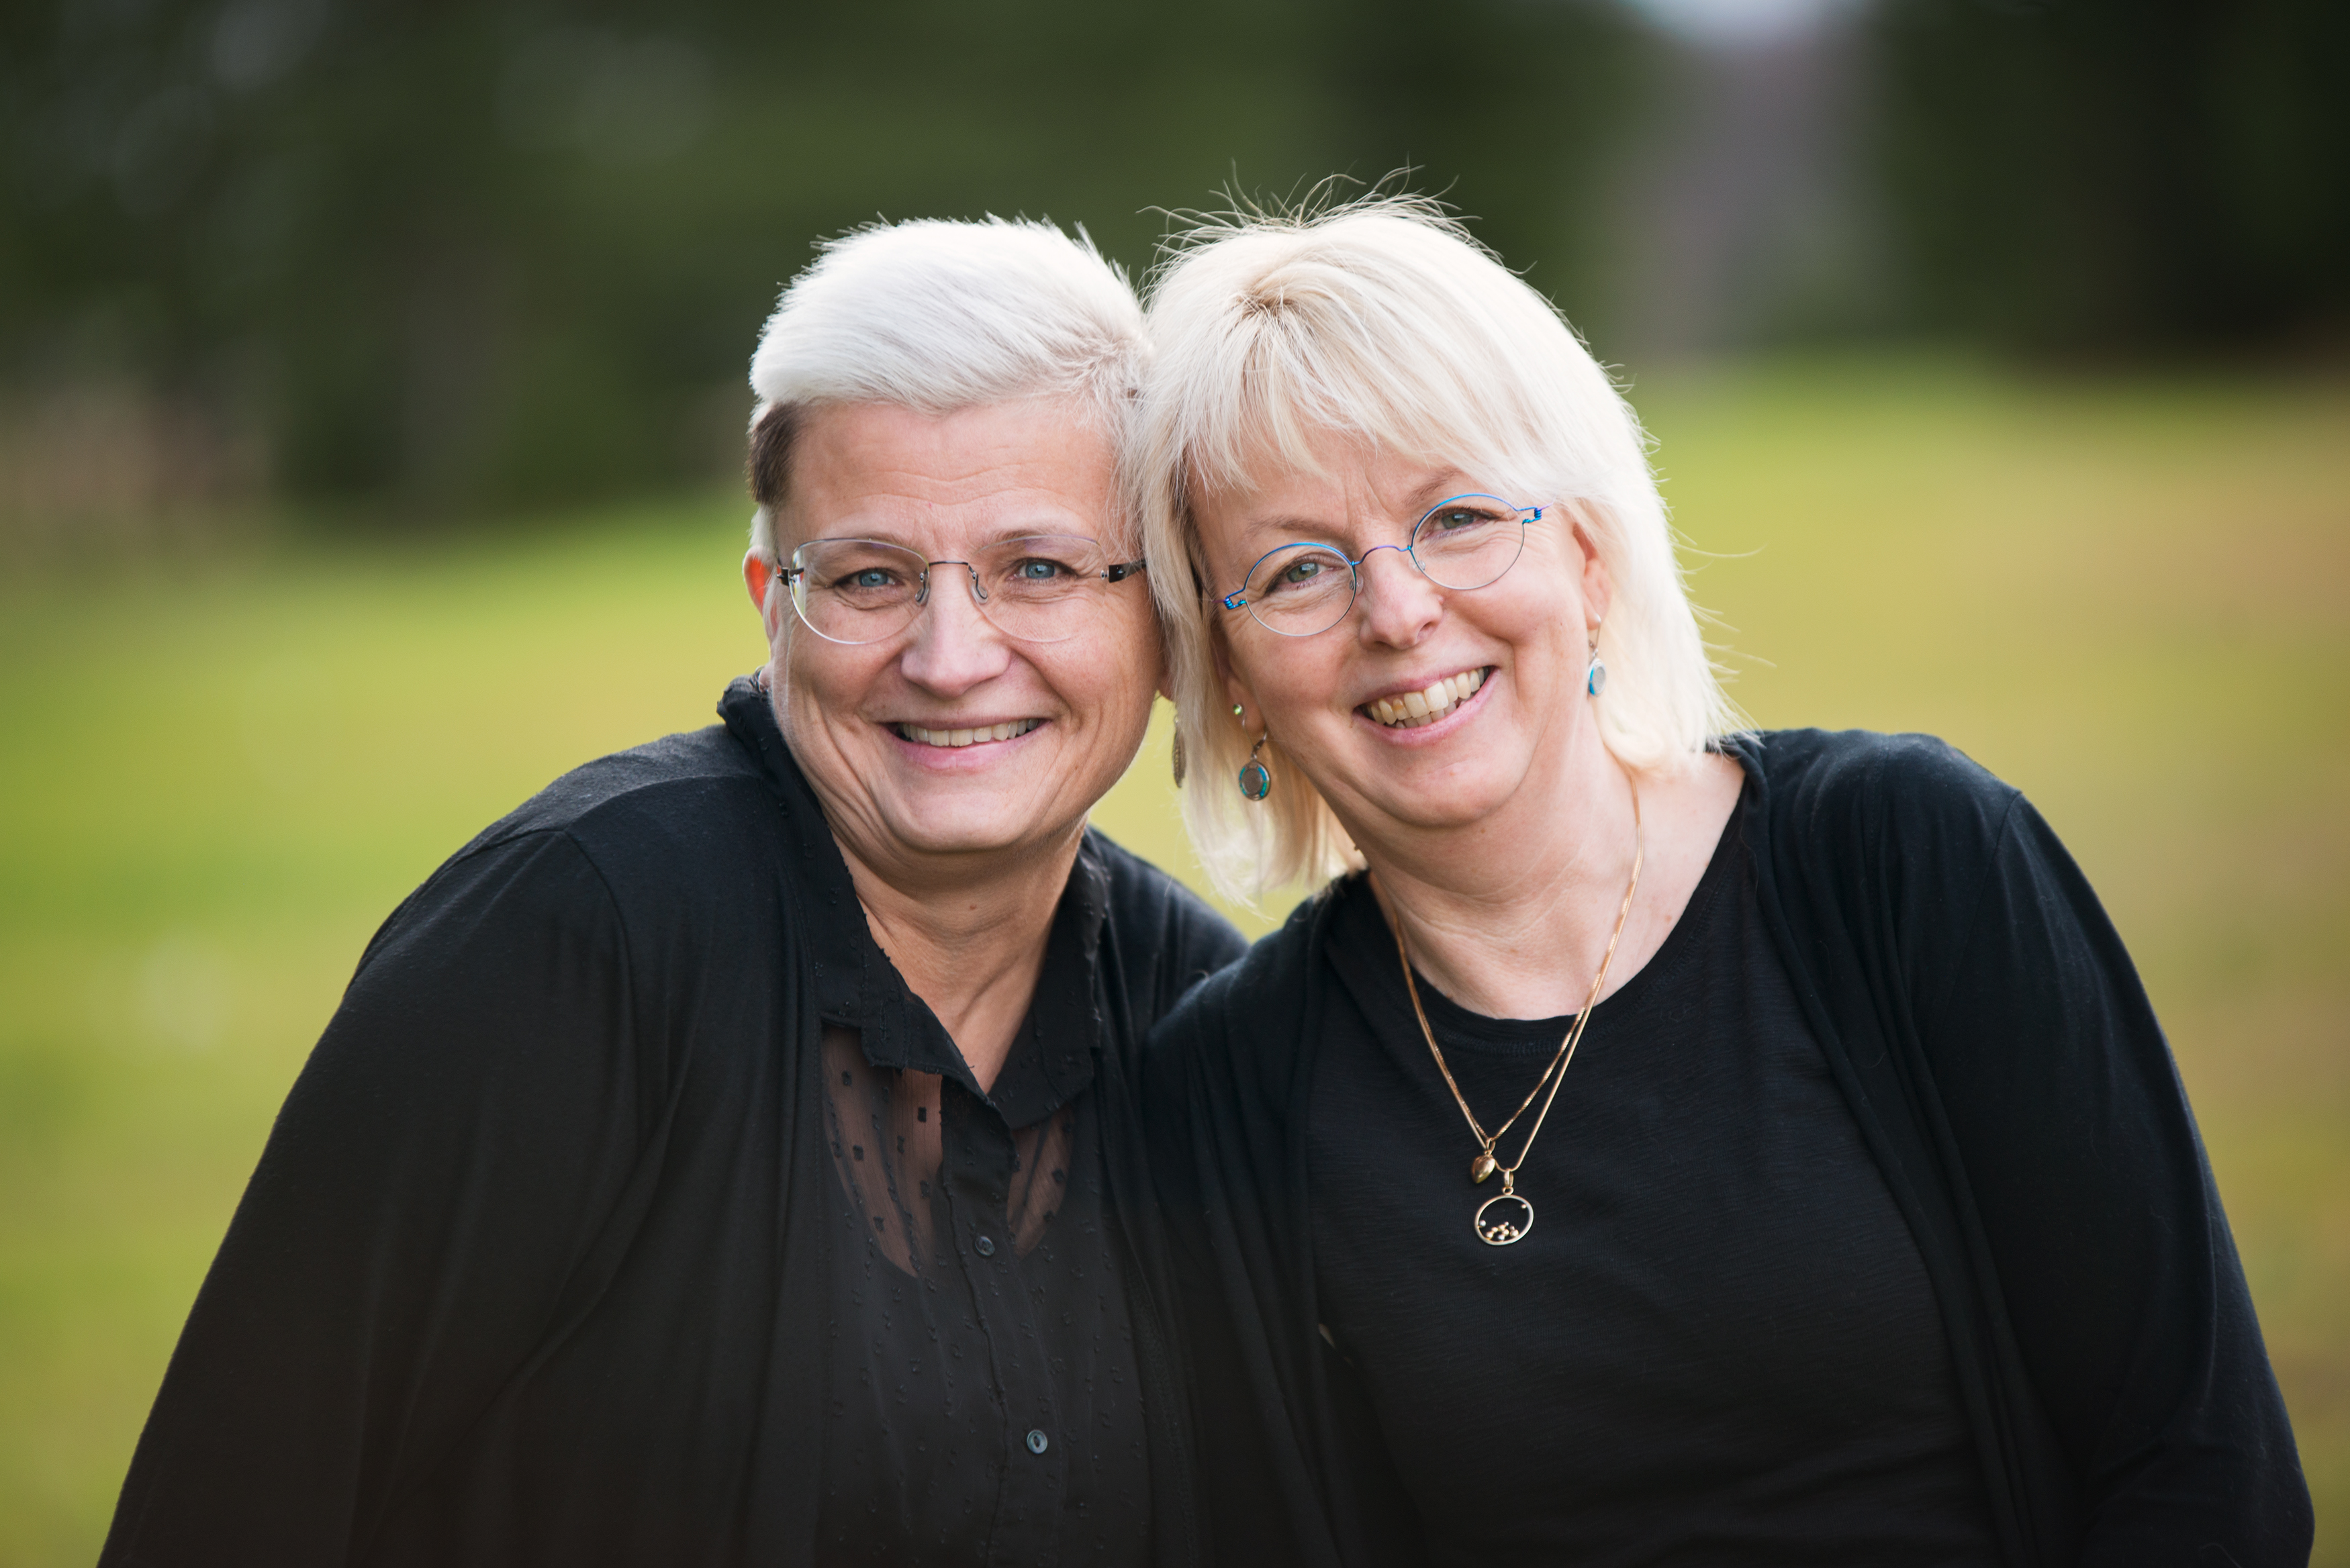 Spiran i Sikeå drivs av Ann-britt och Kerstin Andersson